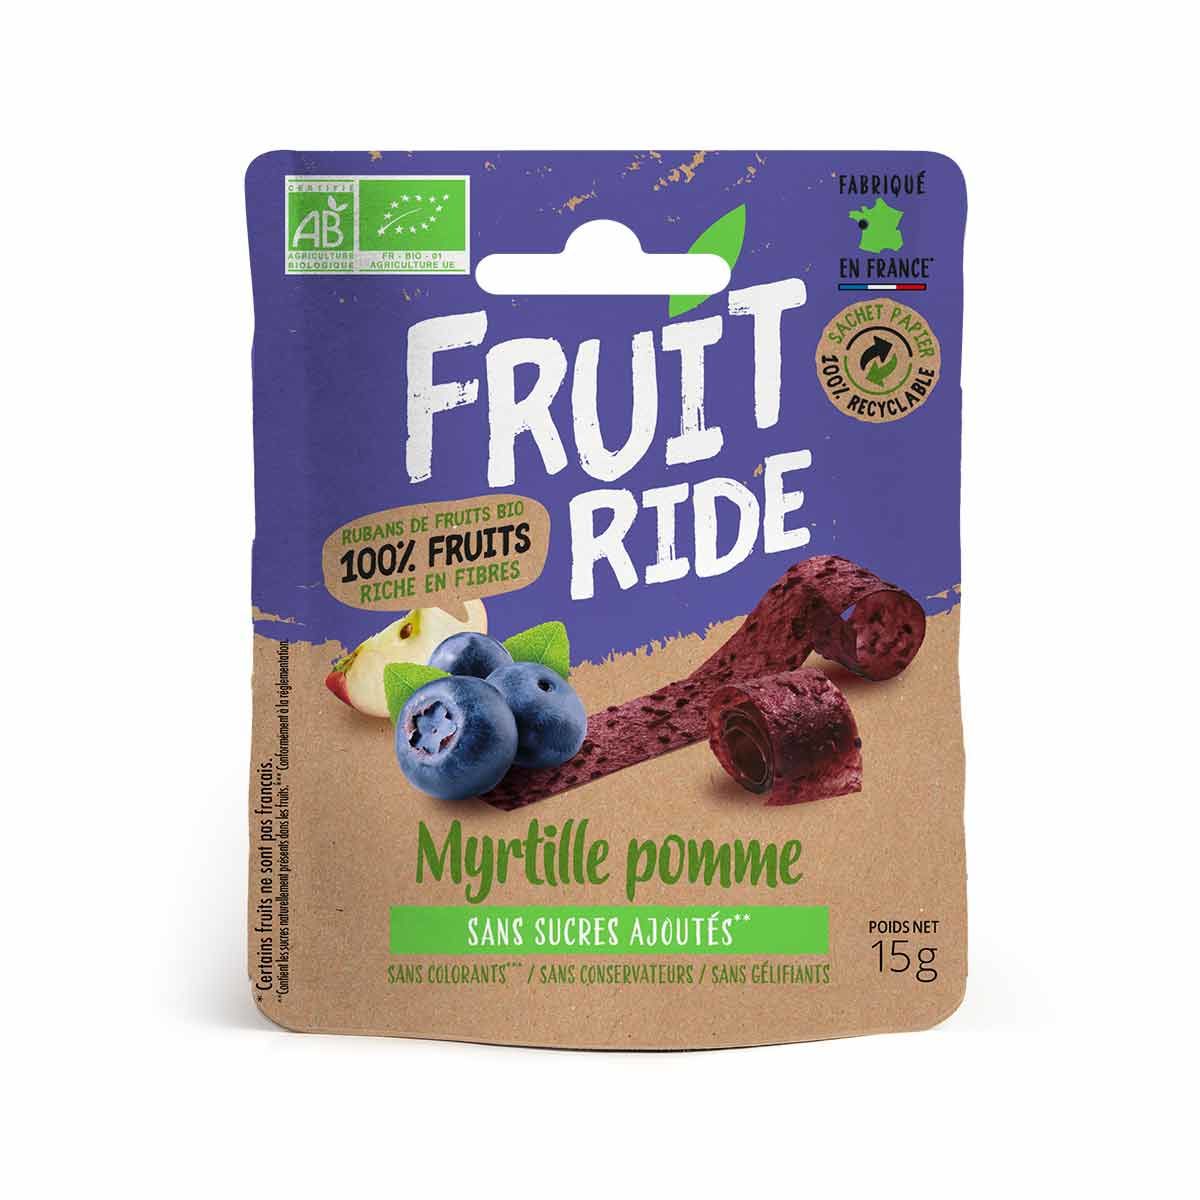 Cuirs de fruits bio Fruit Ride - Myrtille, pomme